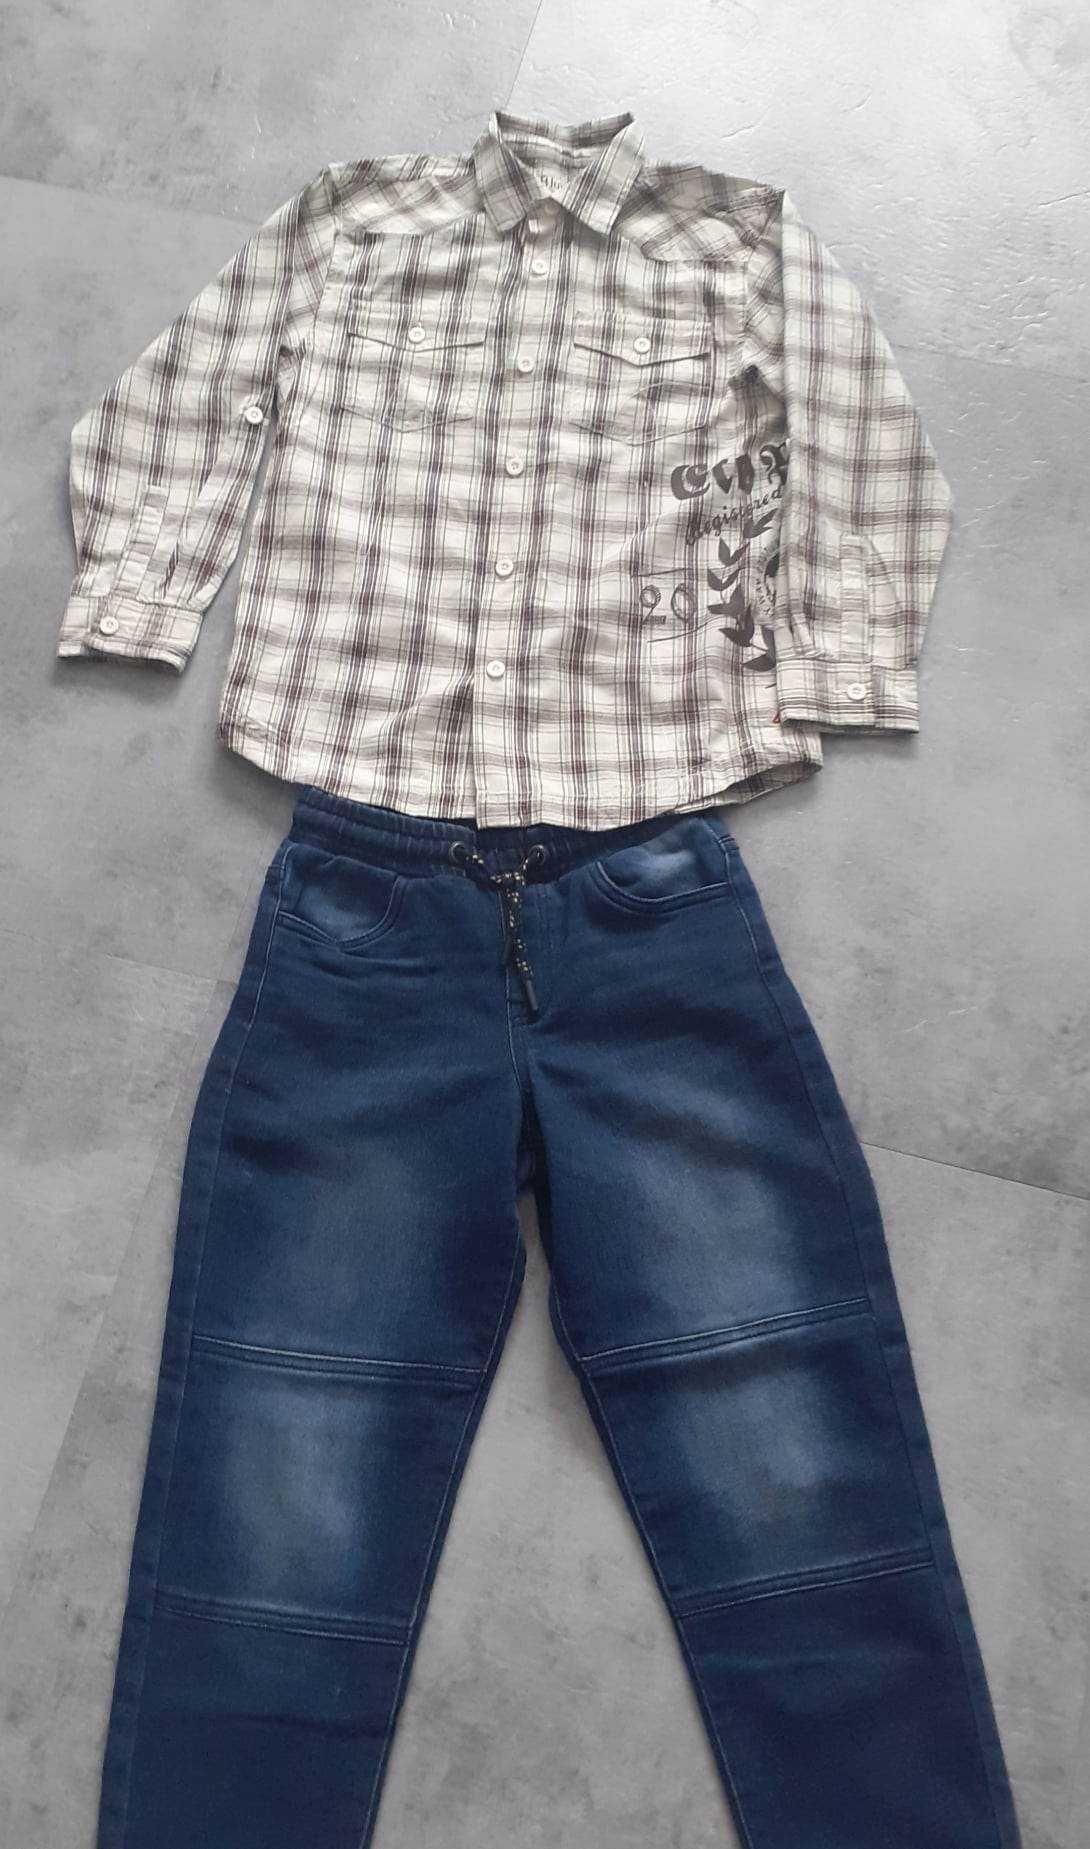 zestaw spodnie i koszula dla chłopca 8-9 lat